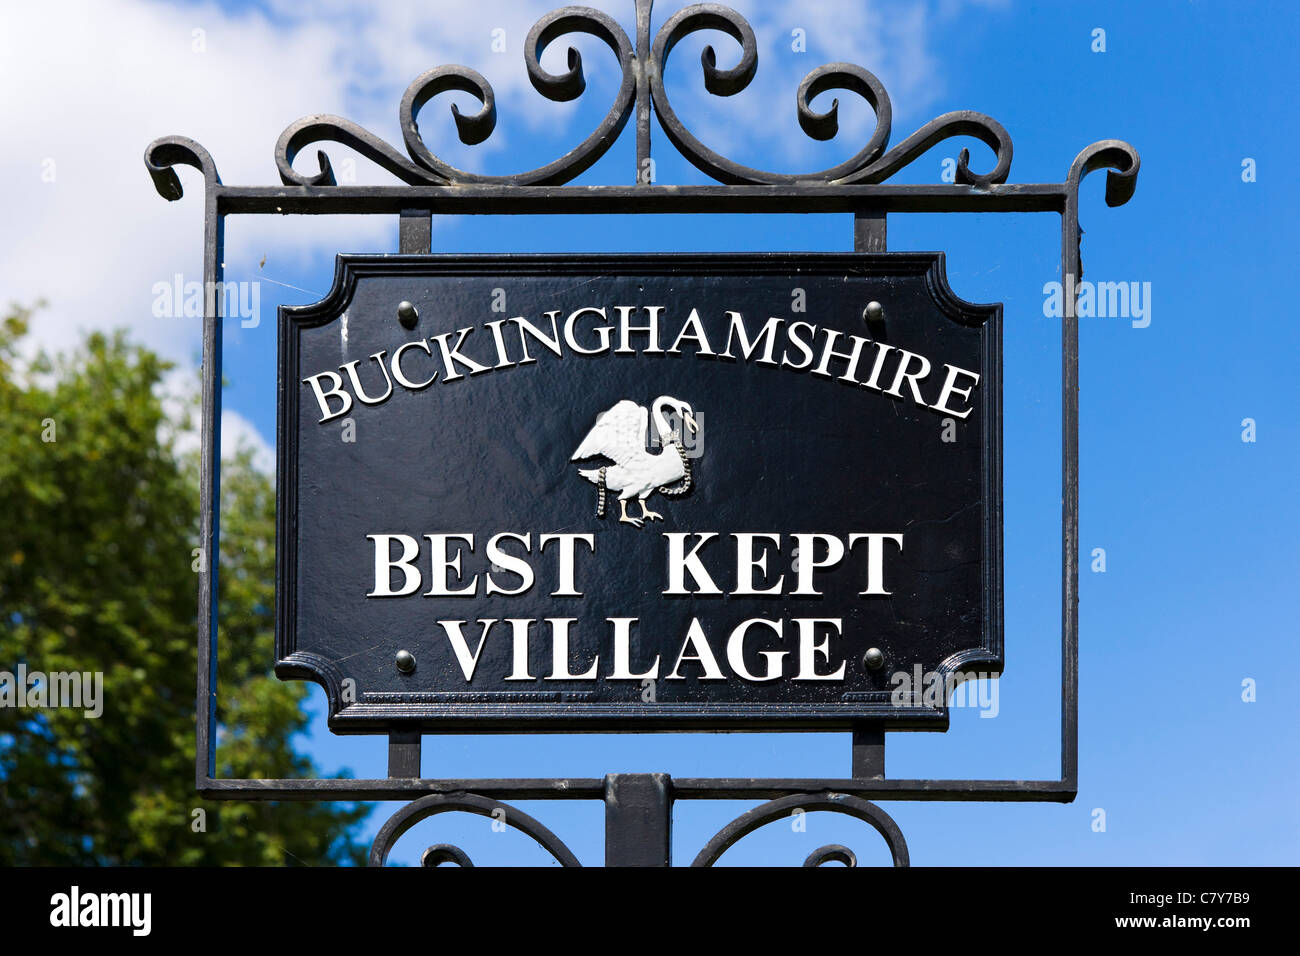 'Village' le mieux gardé de Buckinghamshire signe, High Street, West Wycombe, Buckinghamshire, England, UK Banque D'Images